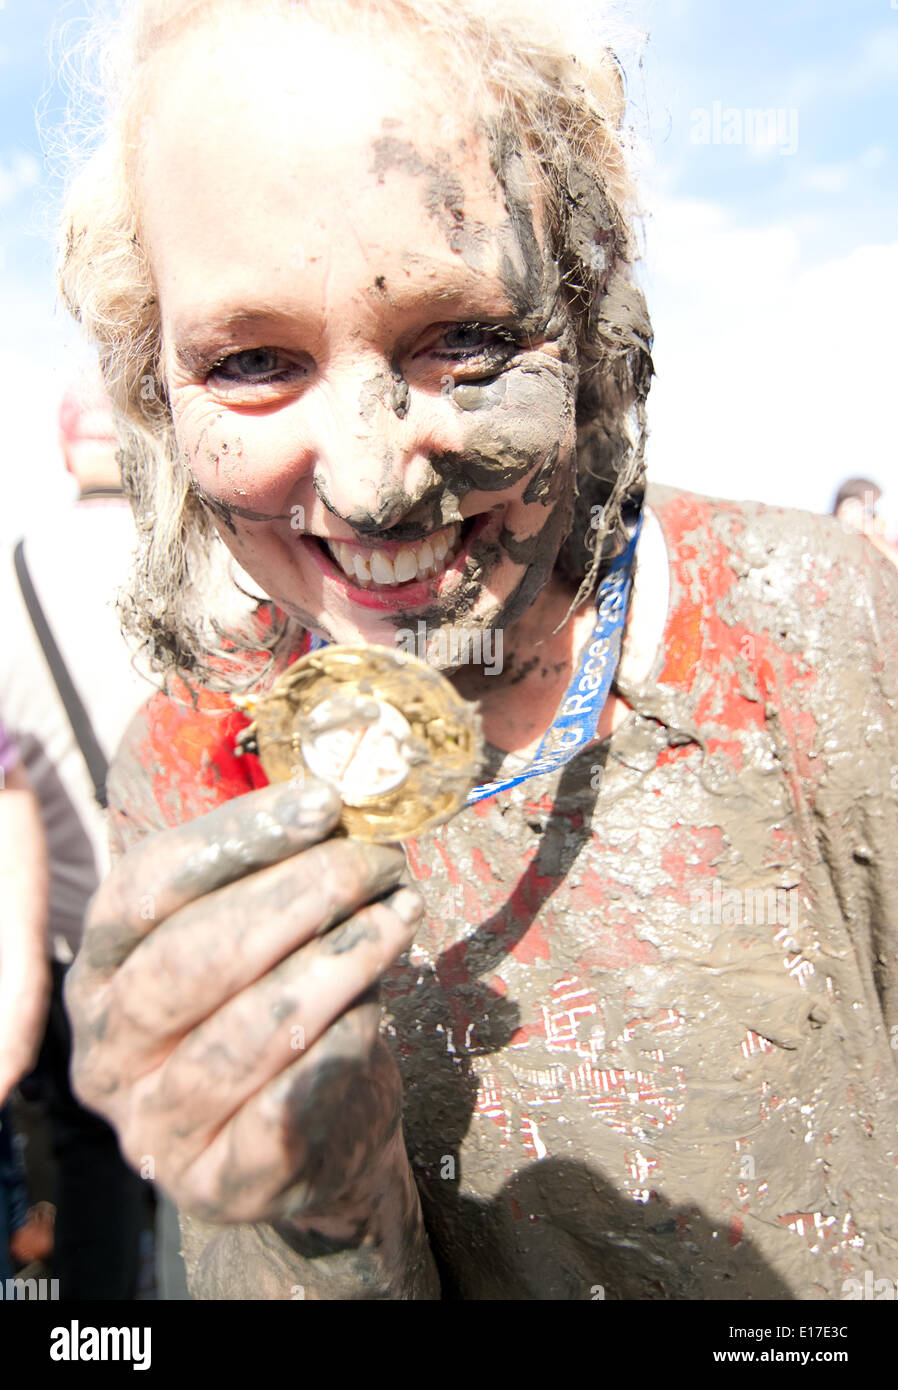 London, UK. 25 mai, 2014. Debbie Douglas ex Towie star montre son Maldon Mud Médaille de la course. UK. Crédit : Tony Yves Gagneux/Alamy Live News Banque D'Images